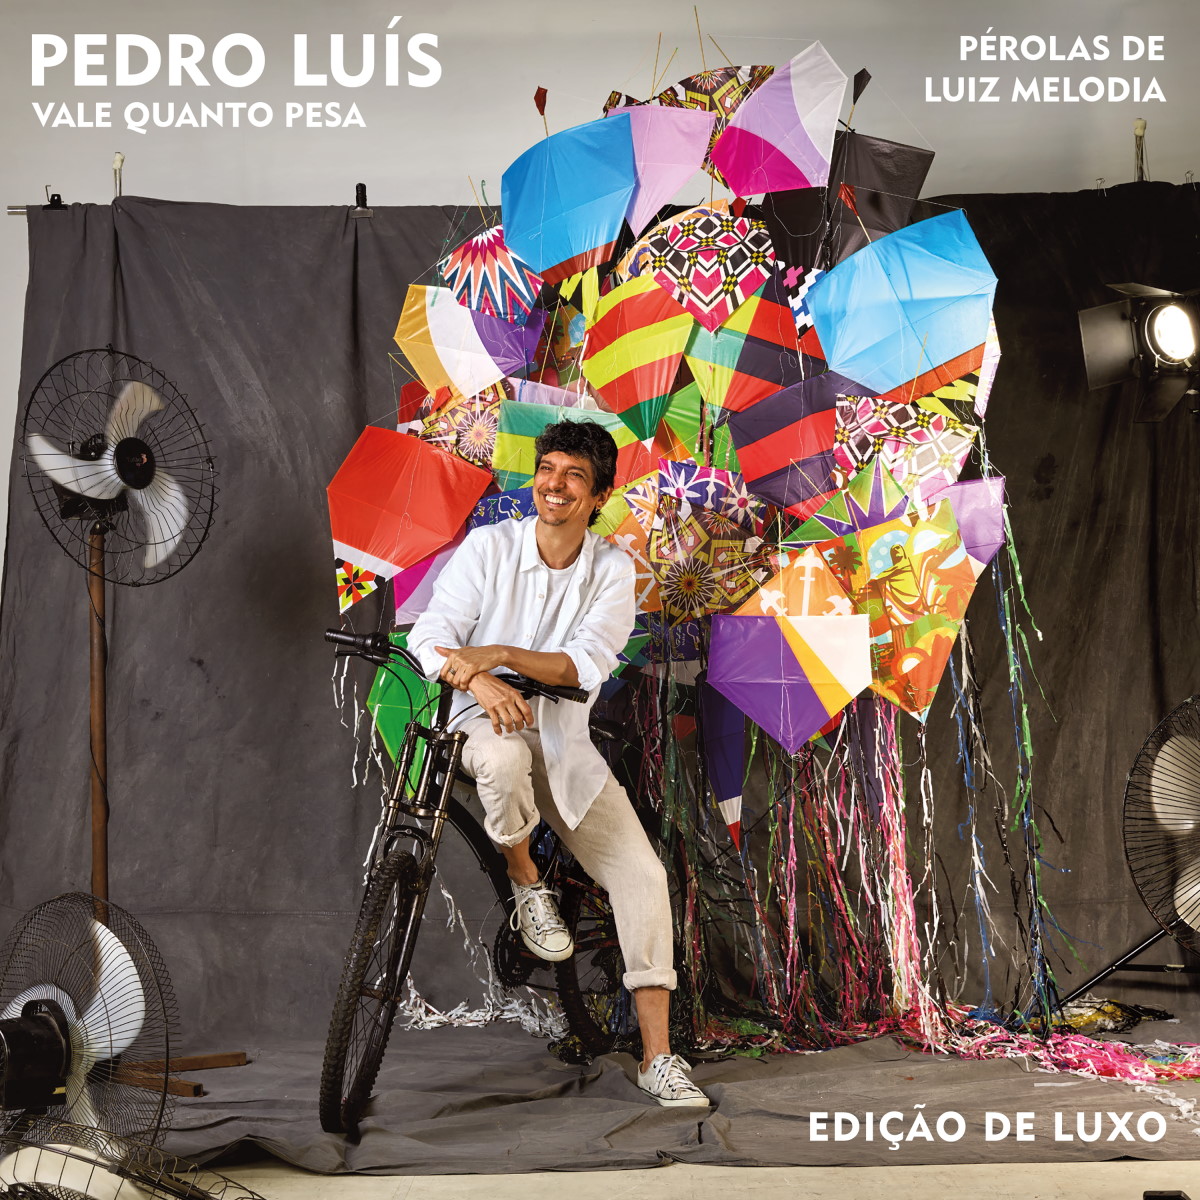 Pedro Luís Vale Quanto Pesa Pérolas de Luiz Melodia Edição de Luxo capa